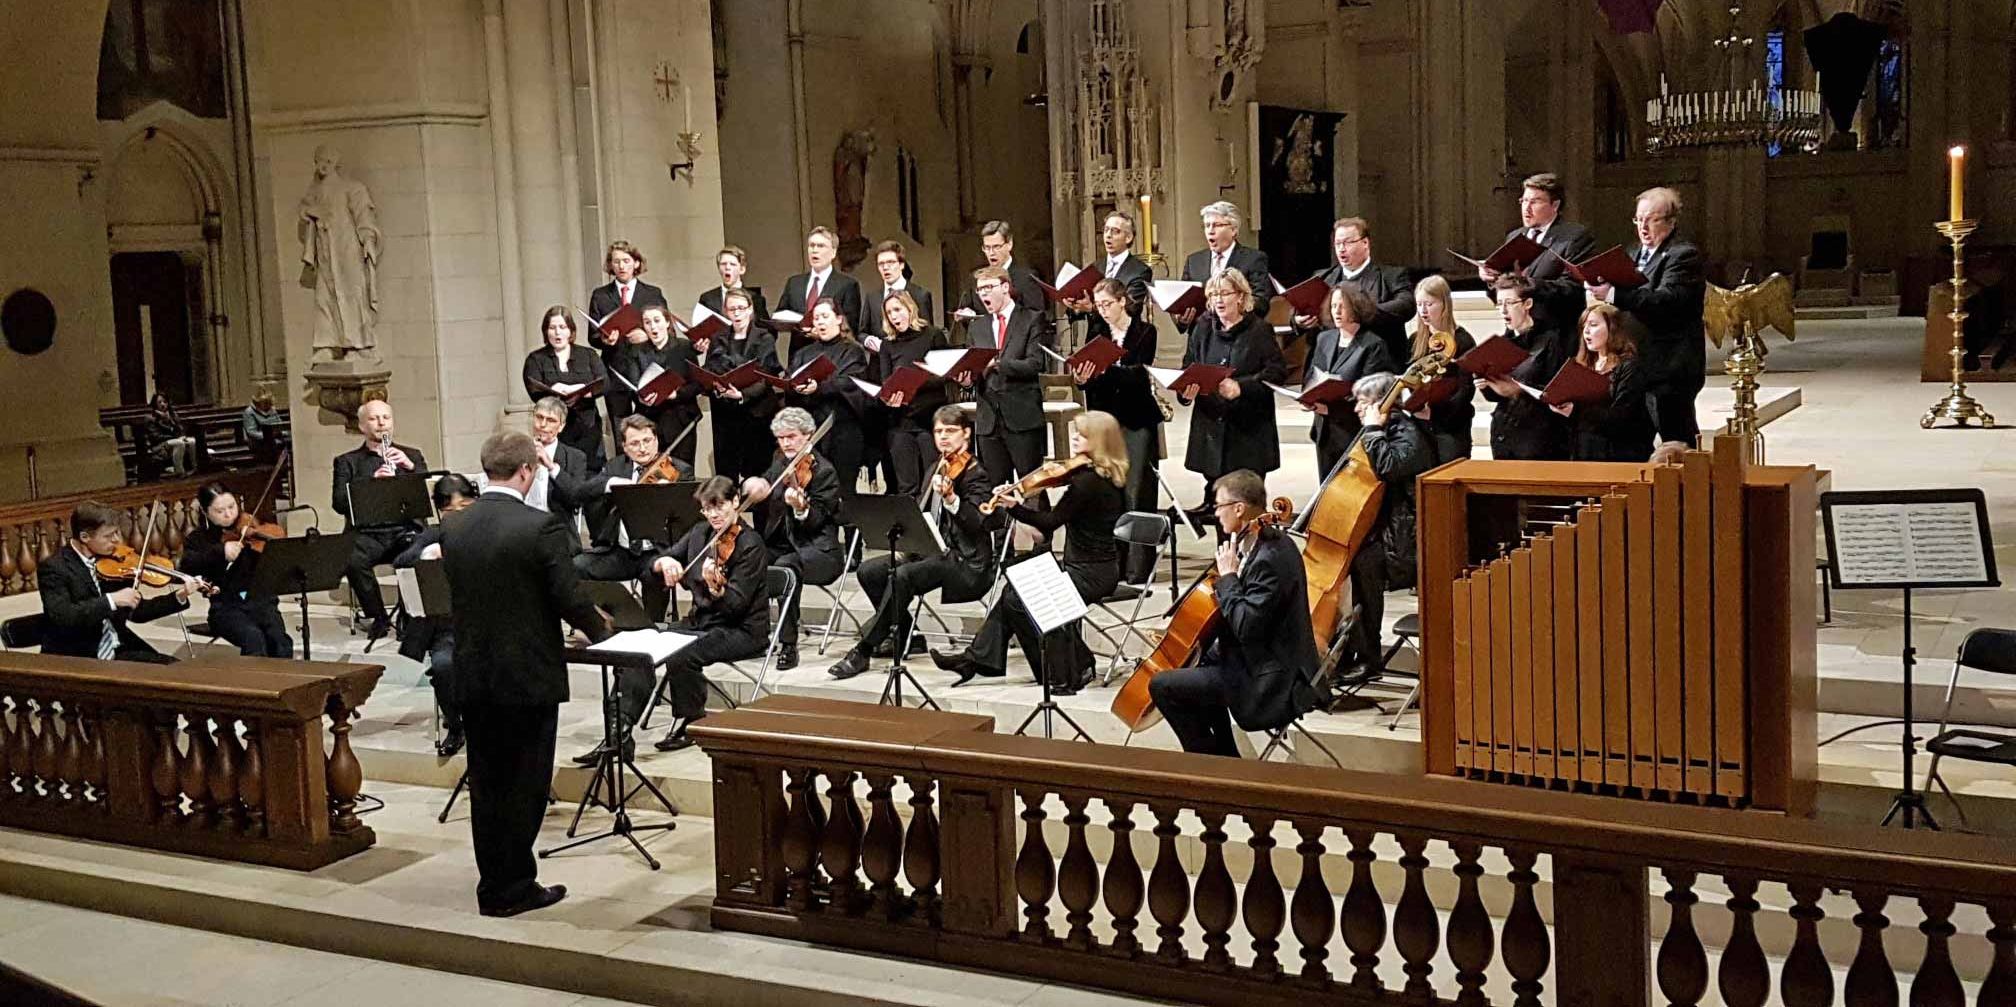 Archivbild: Der Kammerchor am Dom bei der Aufführung einer Bach-Kantate vor der Corona-Pandemie.